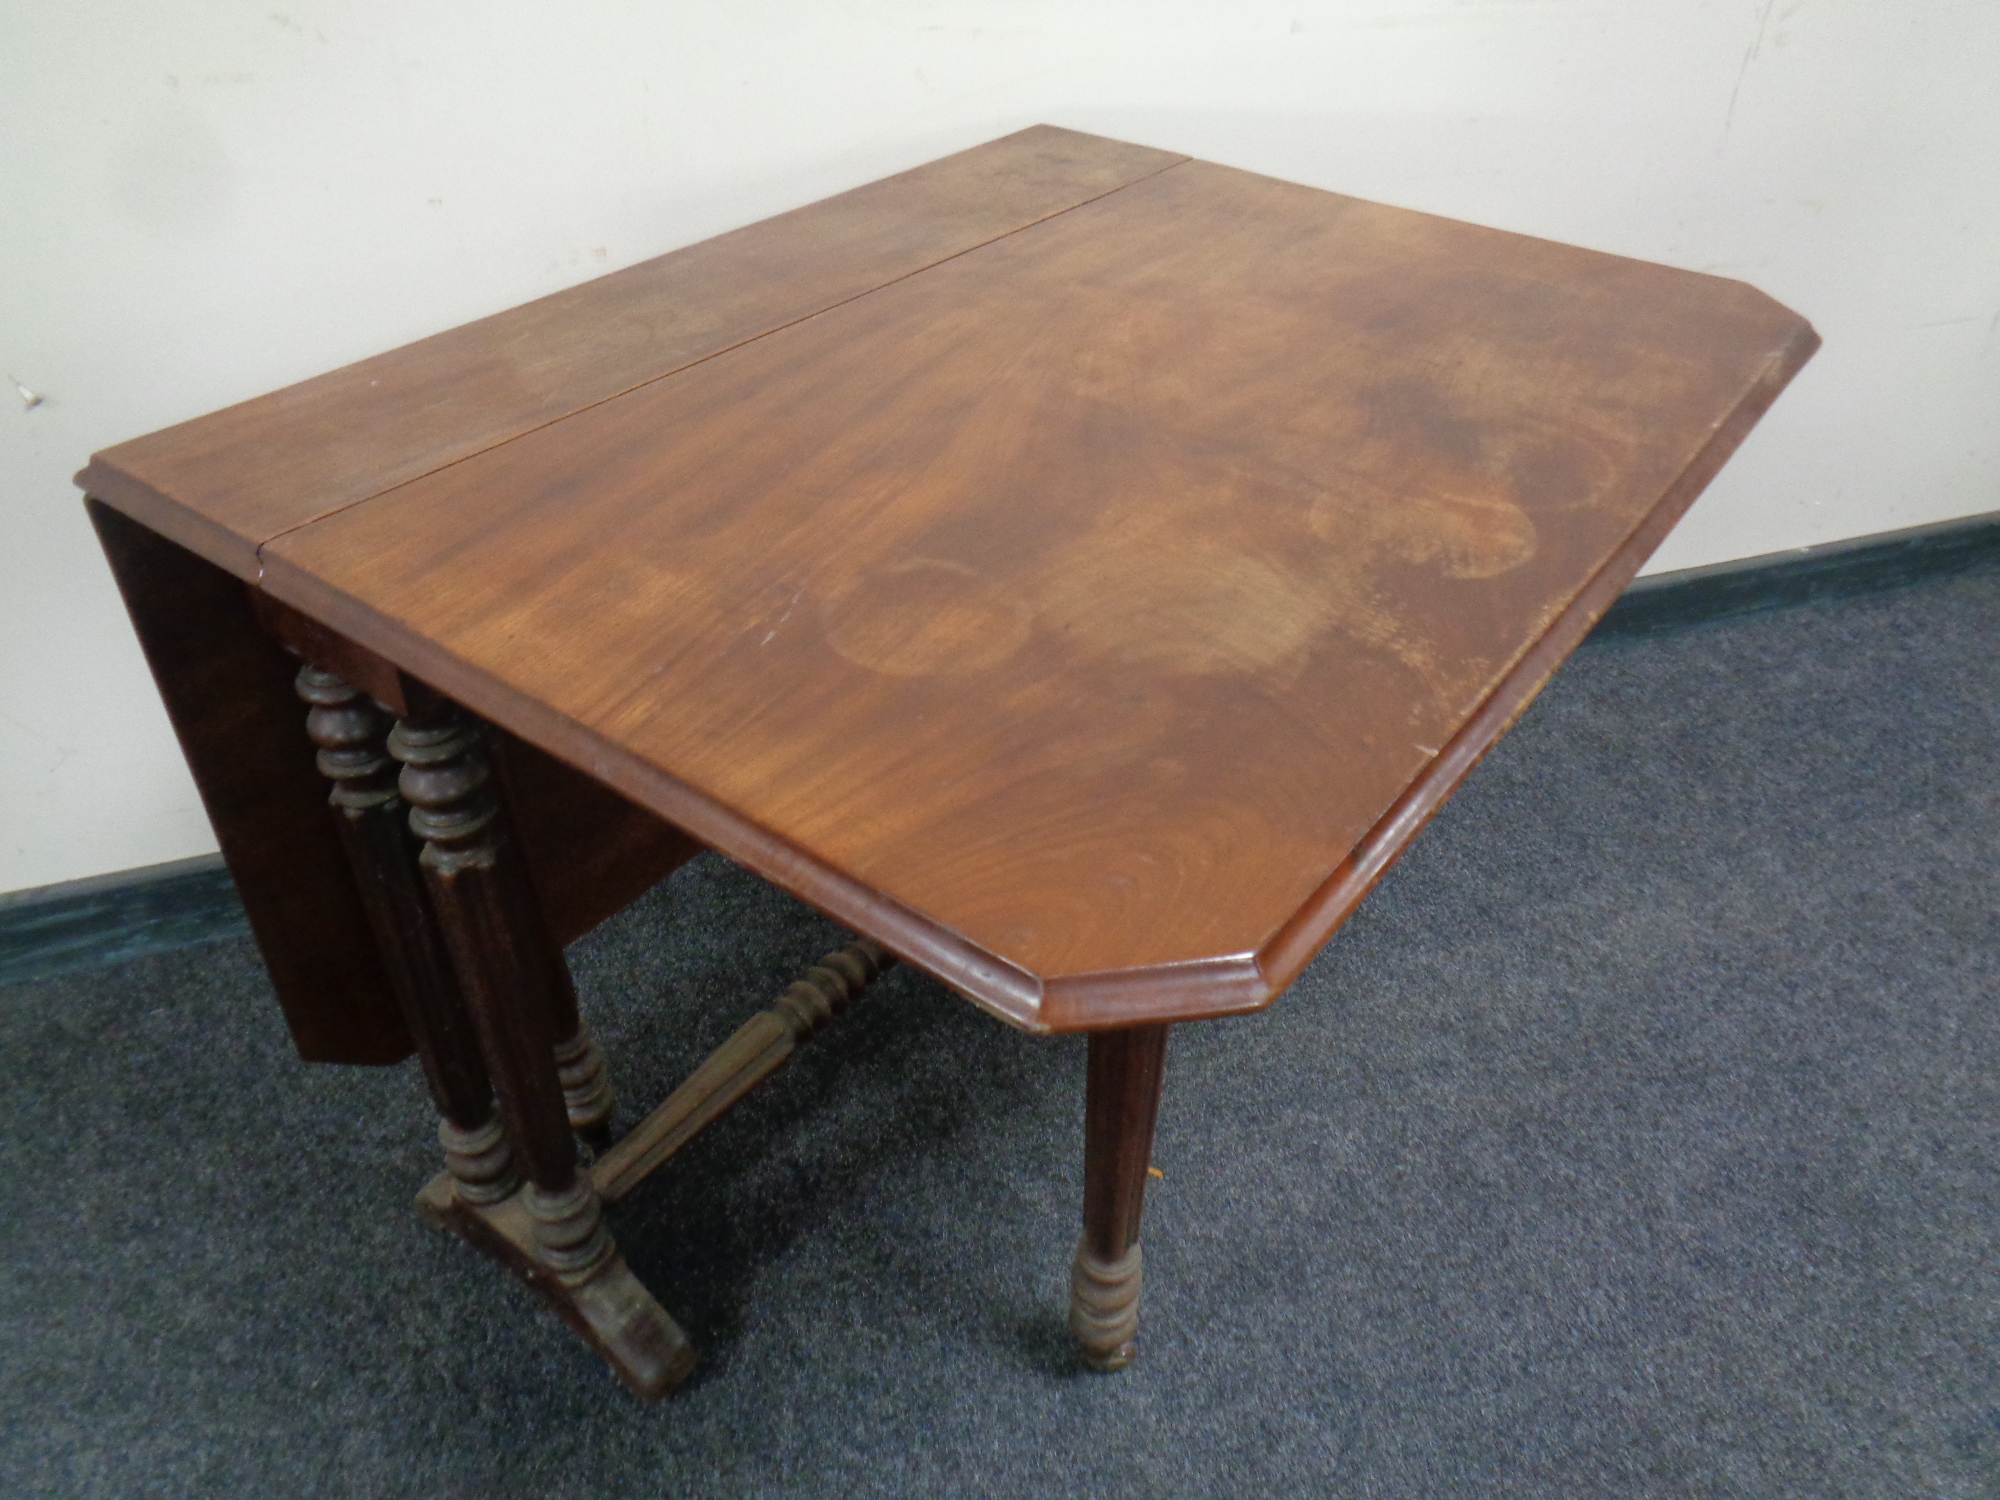 A 19th century mahogany Sutherland table